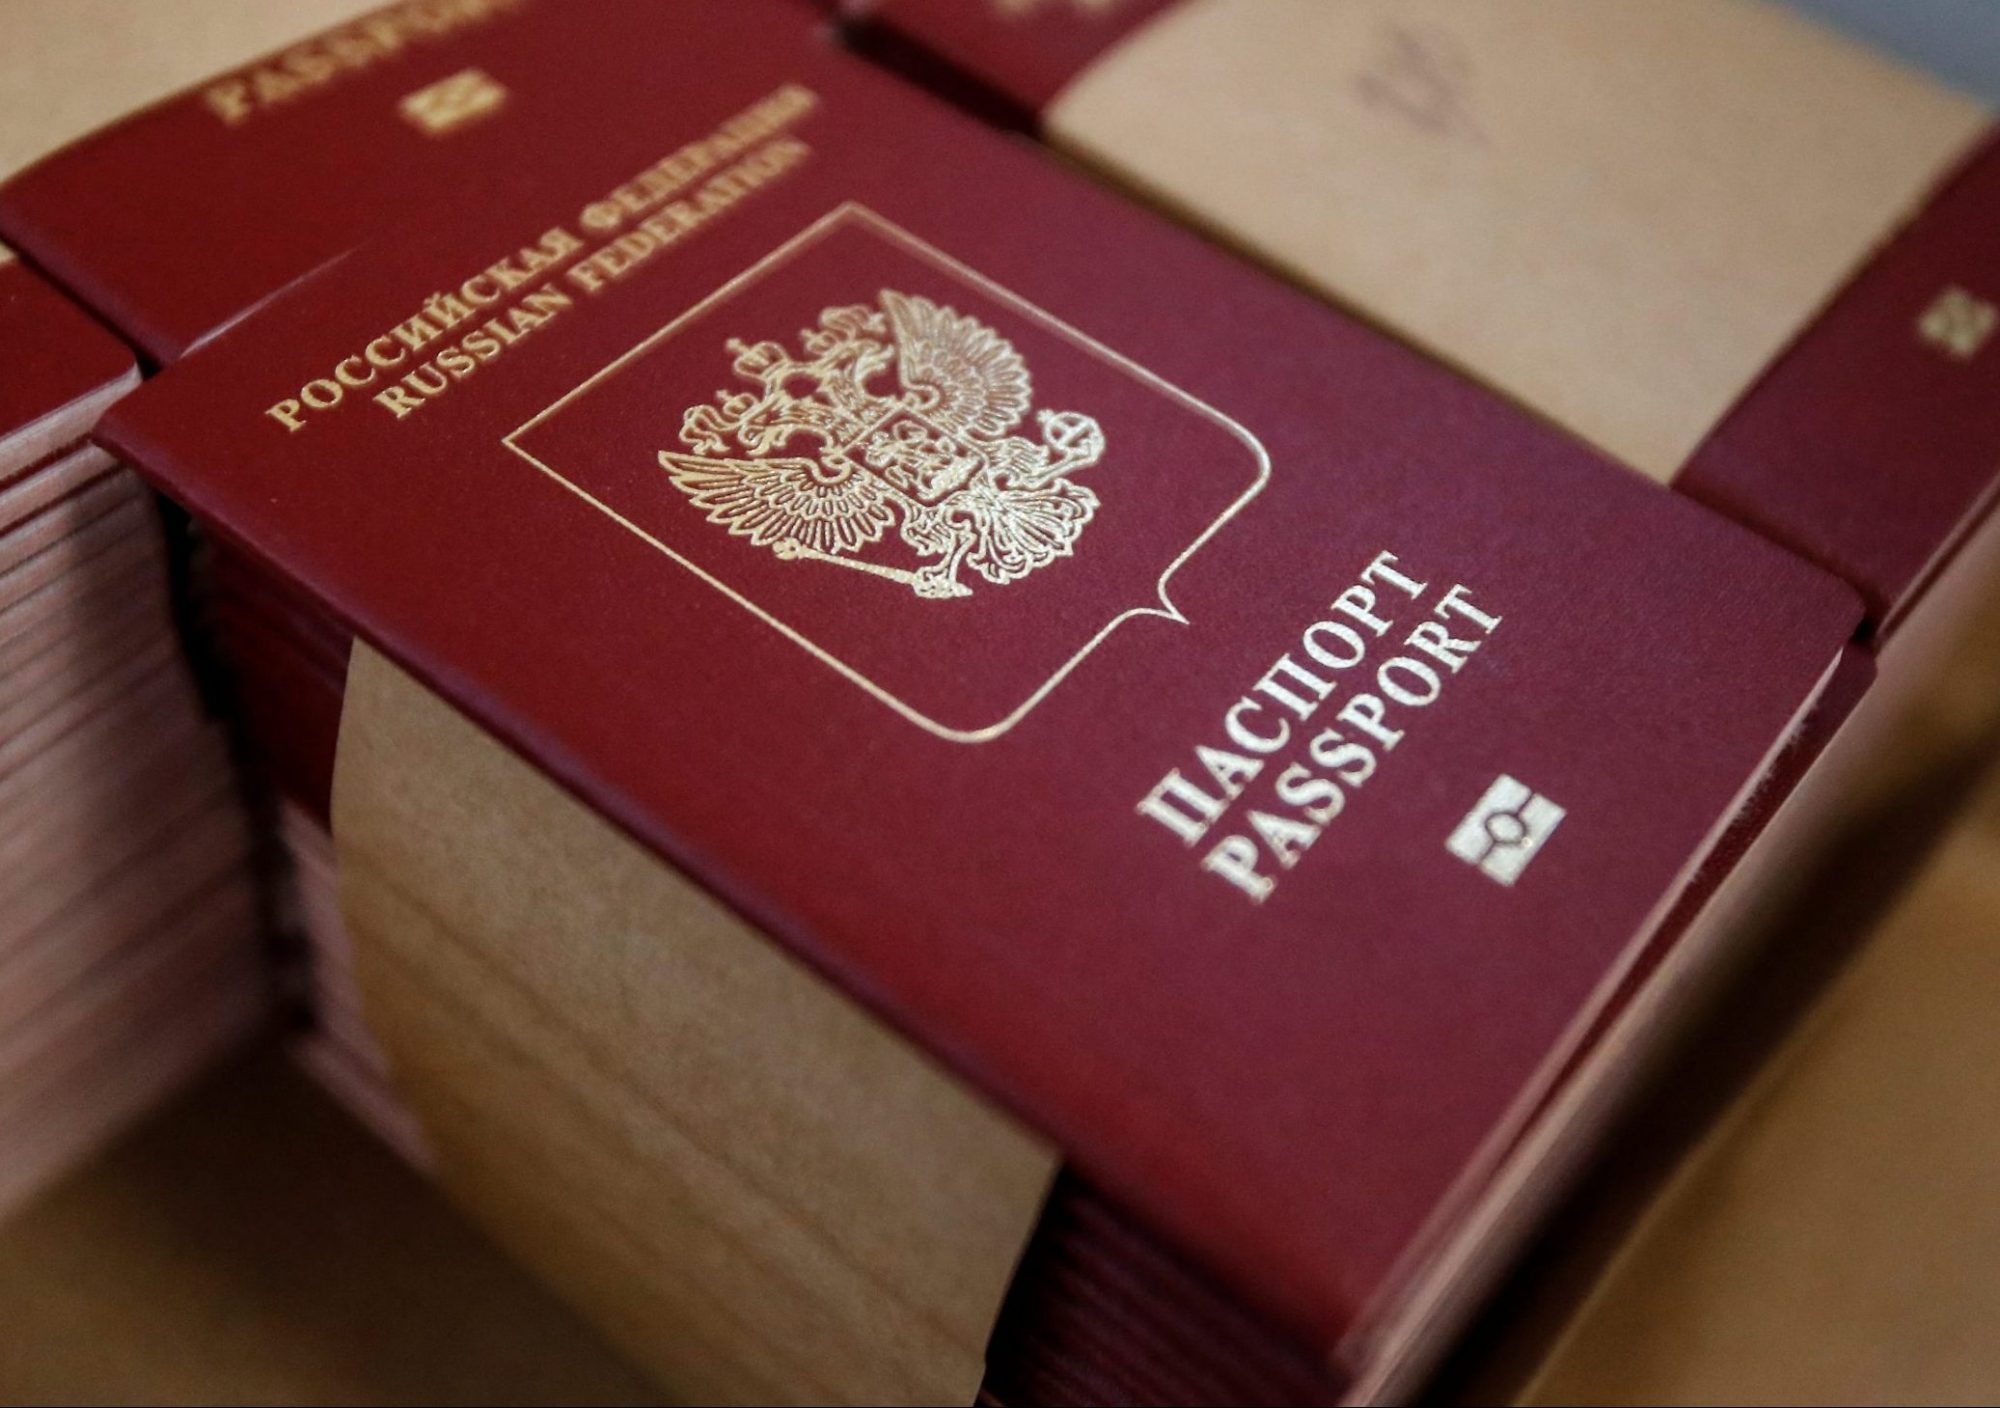 hector cabrera fuentes - mexican scientist - russia - russian passport 2021 - Poccwckas Olmali Russian Federation Passport